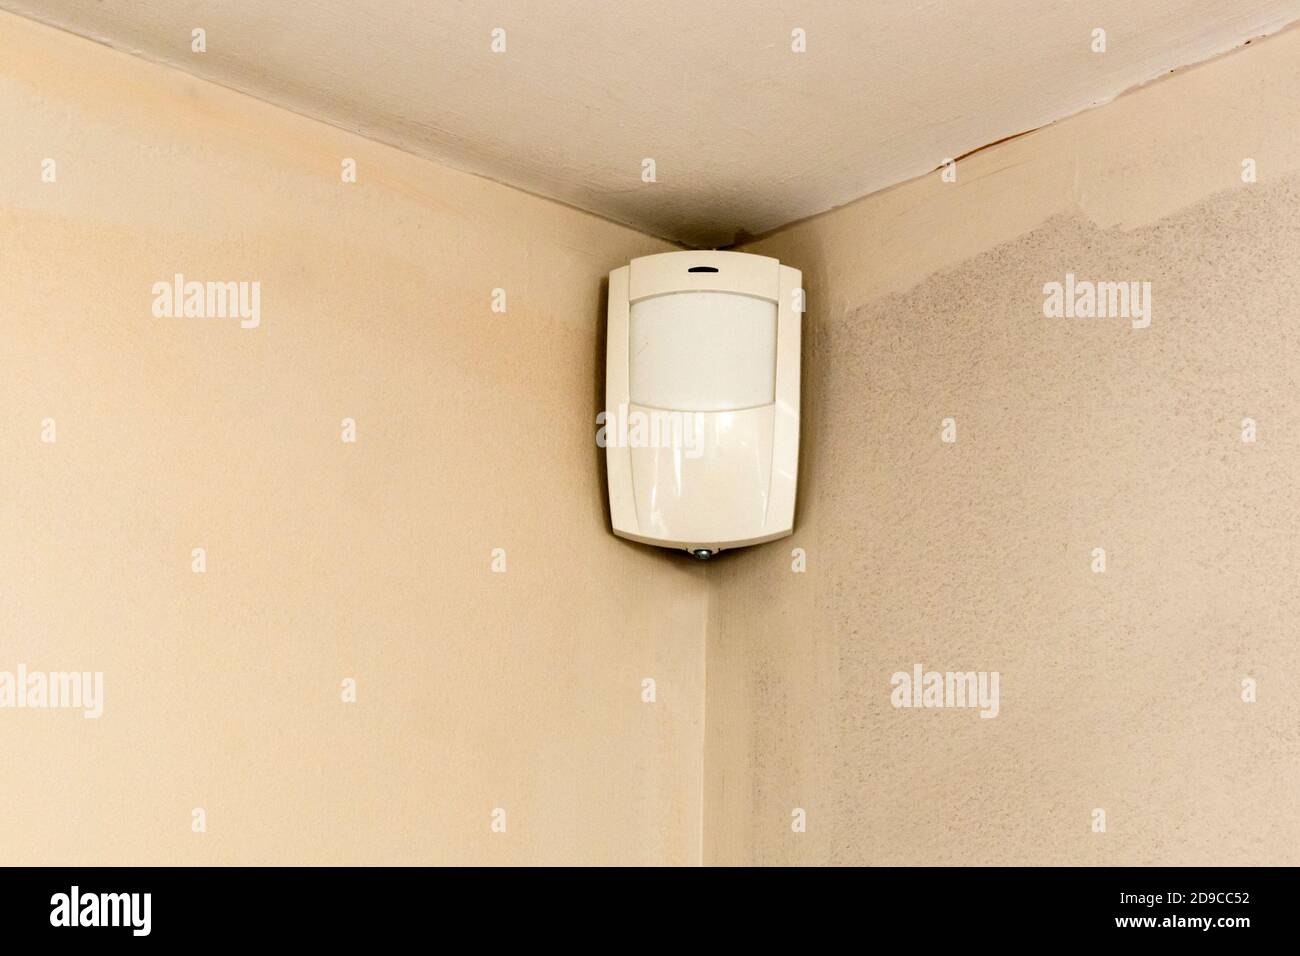 Detector de movimiento en la esquina de la habitación - parte de un sistema de seguridad para el hogar. Foto de stock